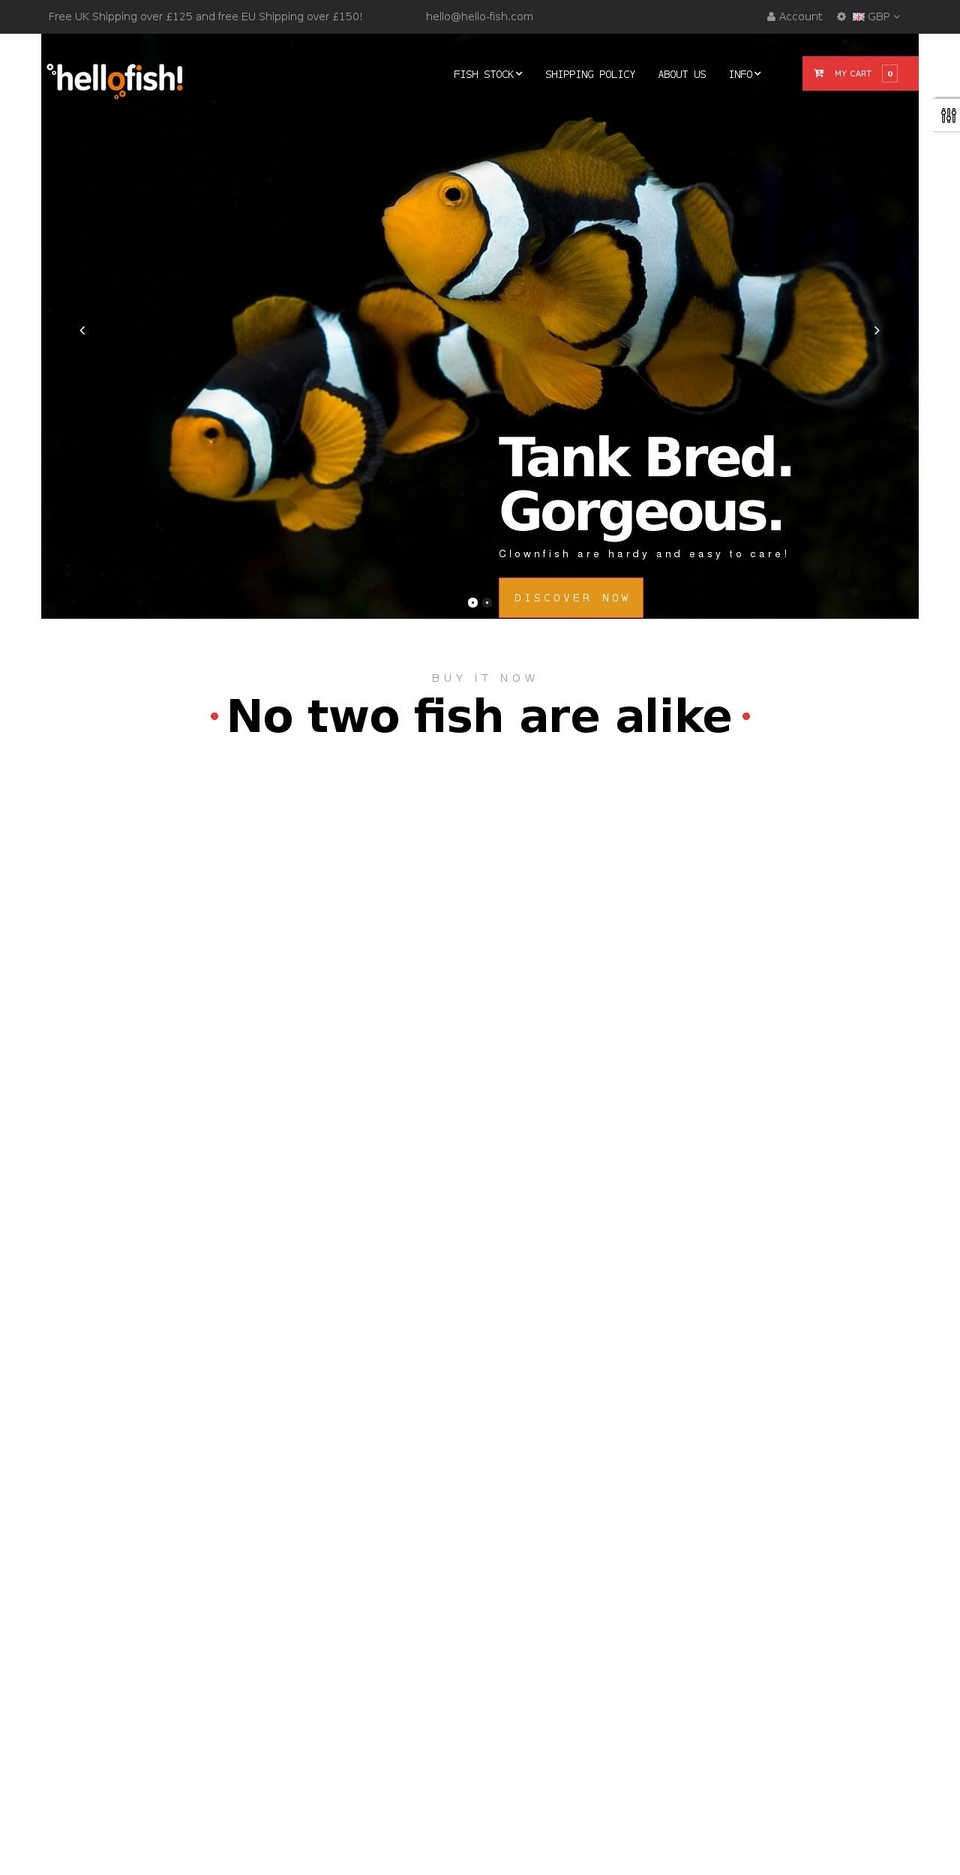 hello-fish.com shopify website screenshot